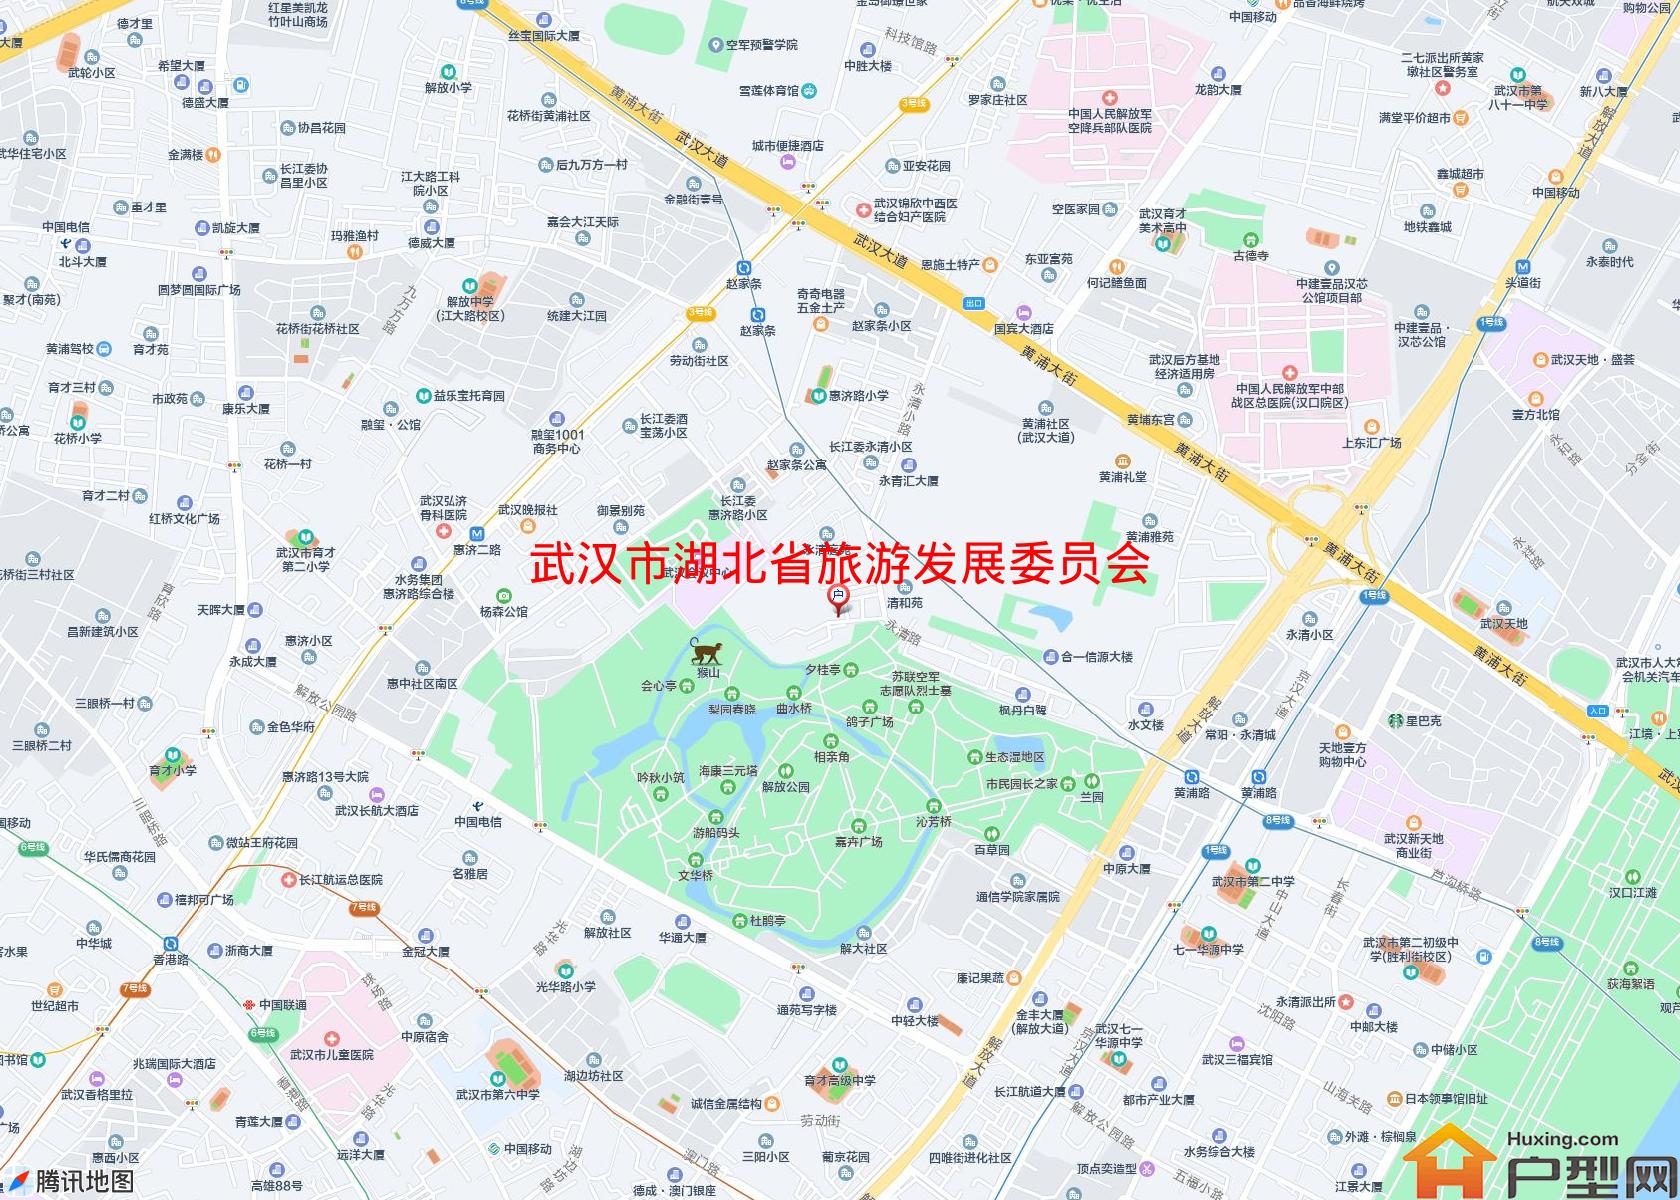 湖北省旅游发展委员会宿舍小区 - 户型网